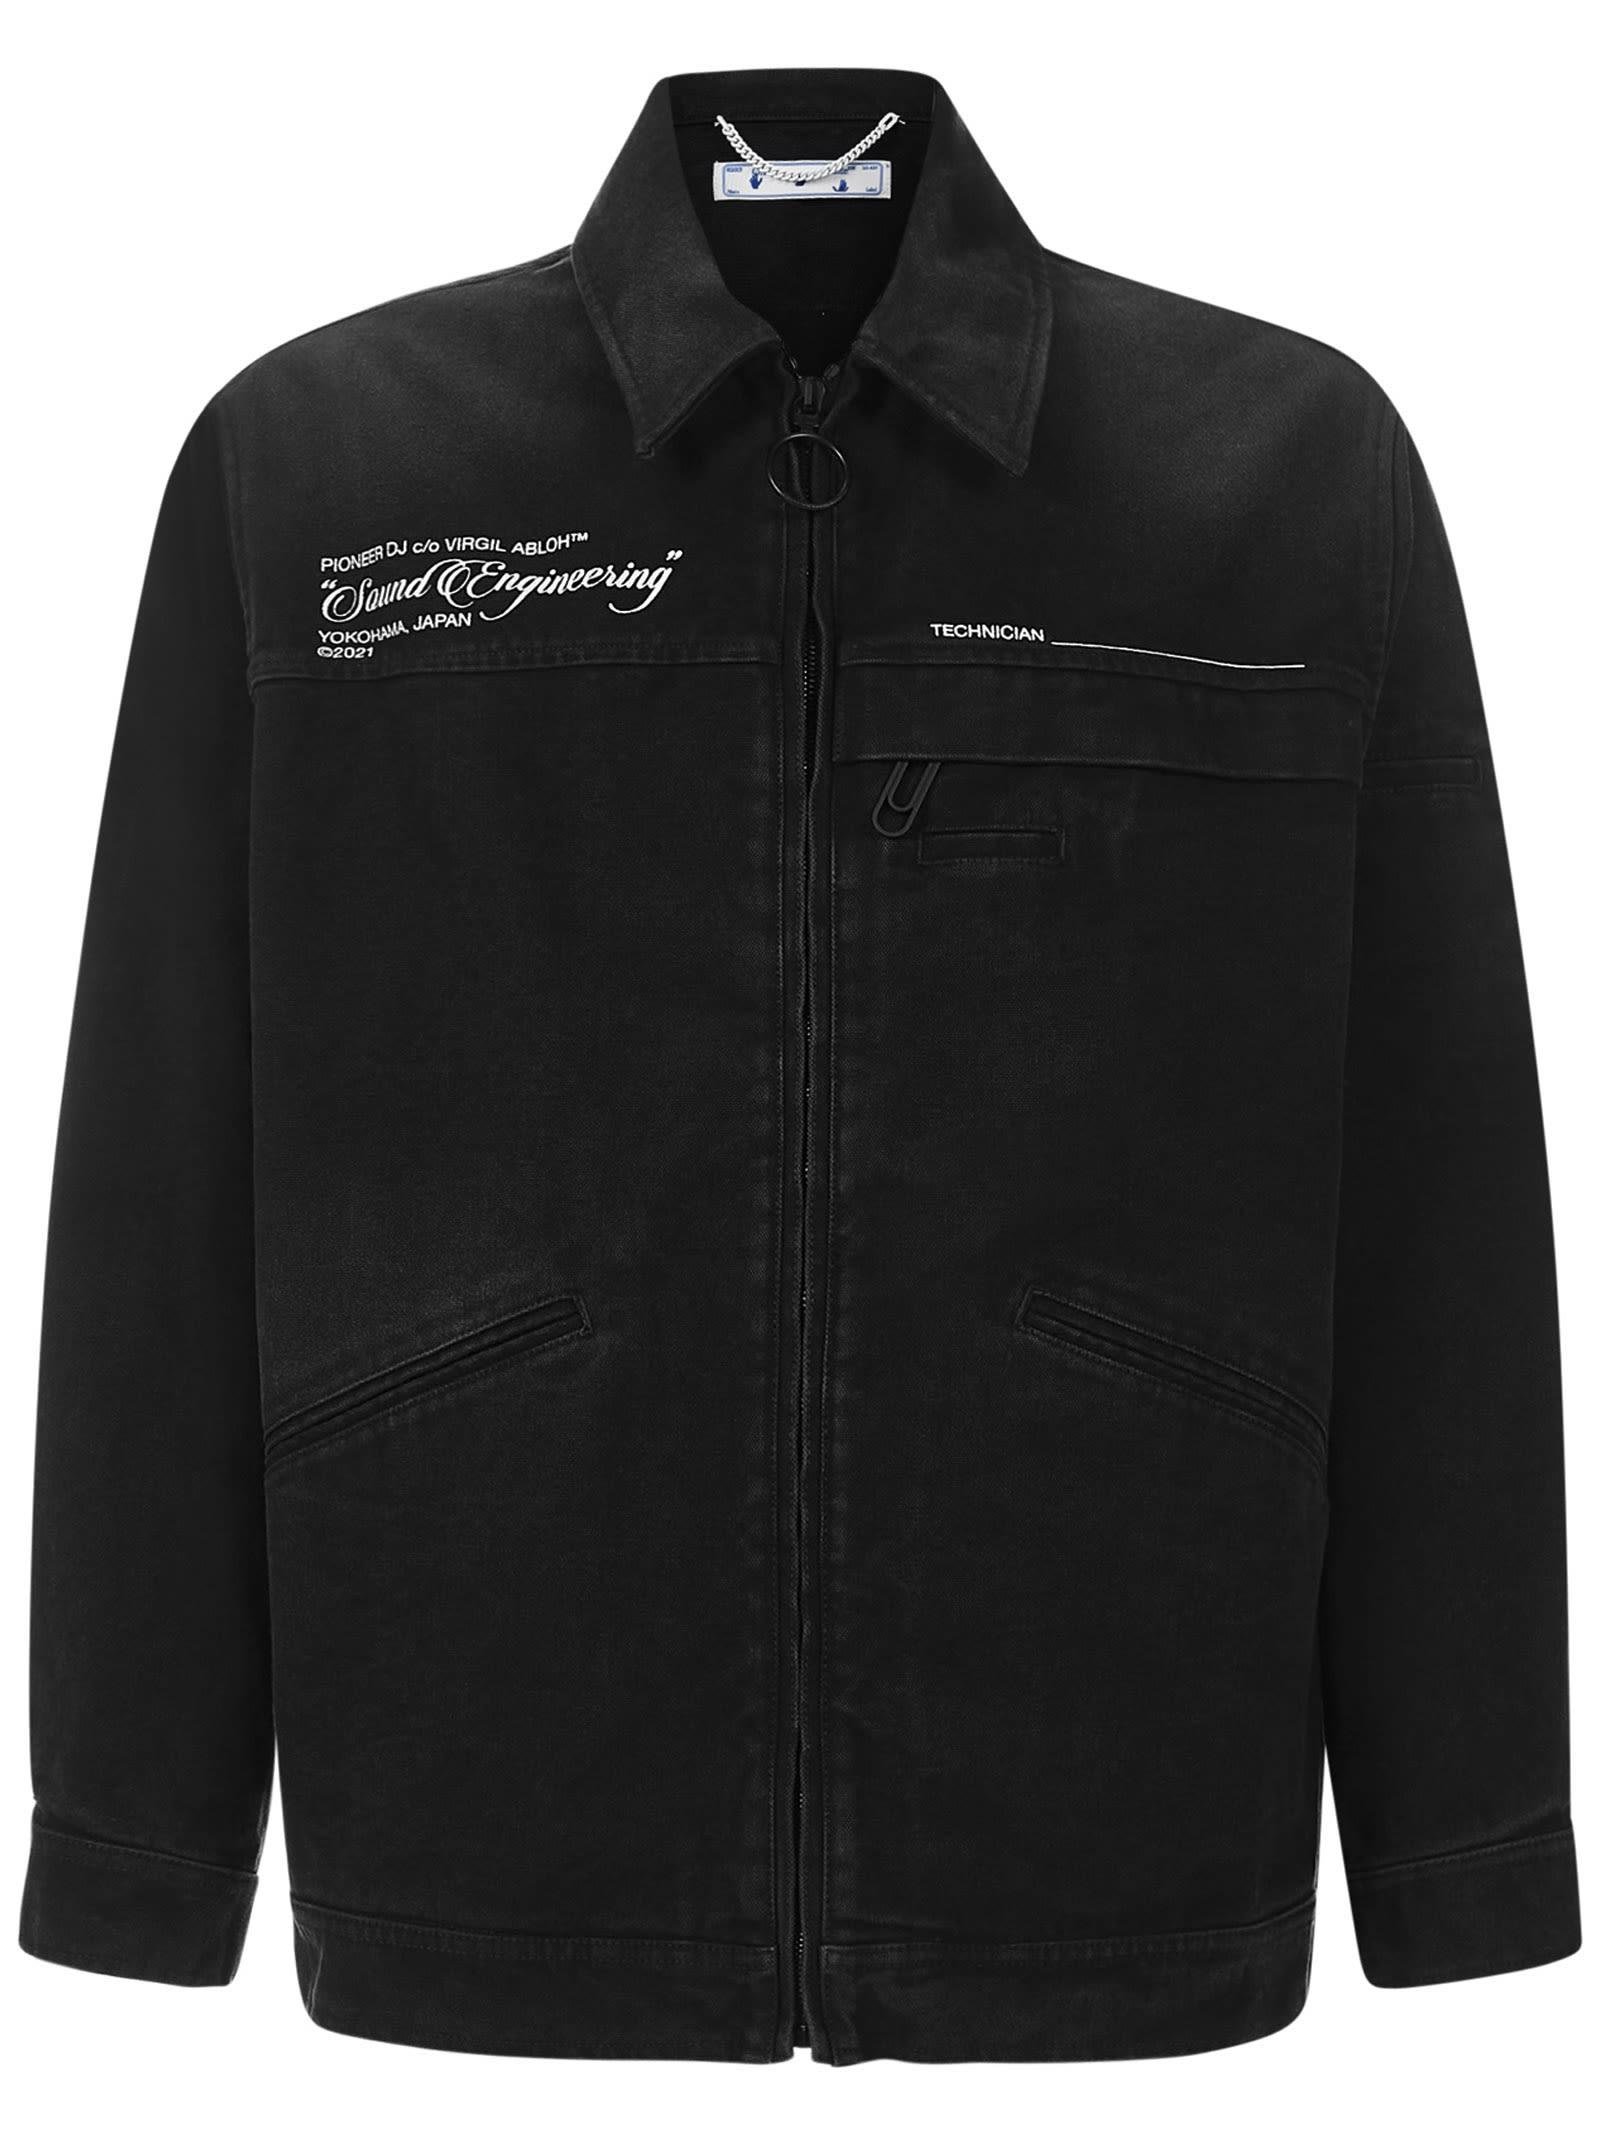 Off White Black Leather Jacket Virgil - RockStar Jacket